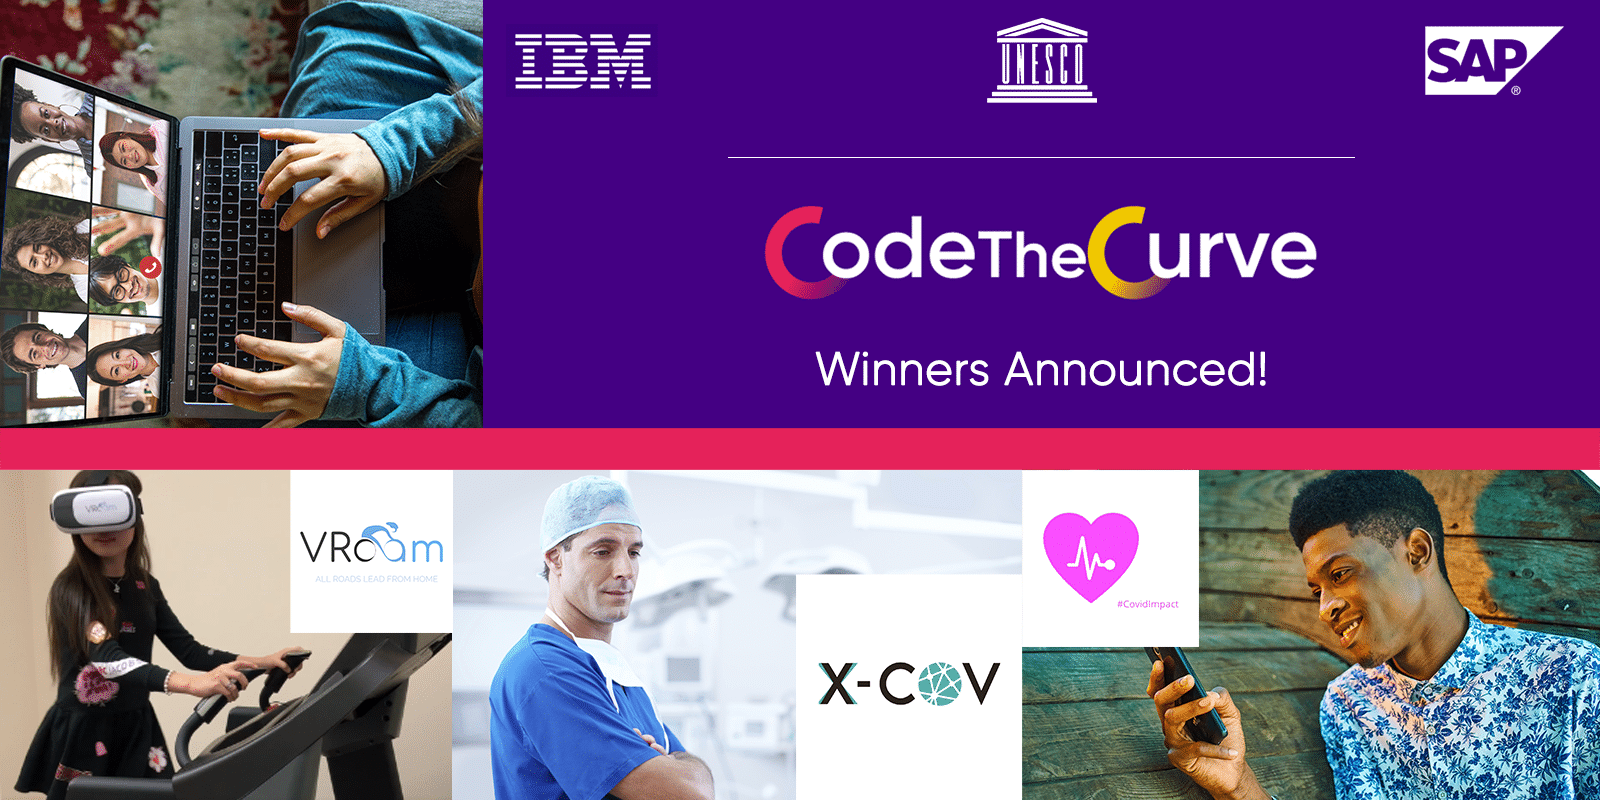 CodeTheCurve Global Hackathon Identifies Winner Remedies for Global Crisis